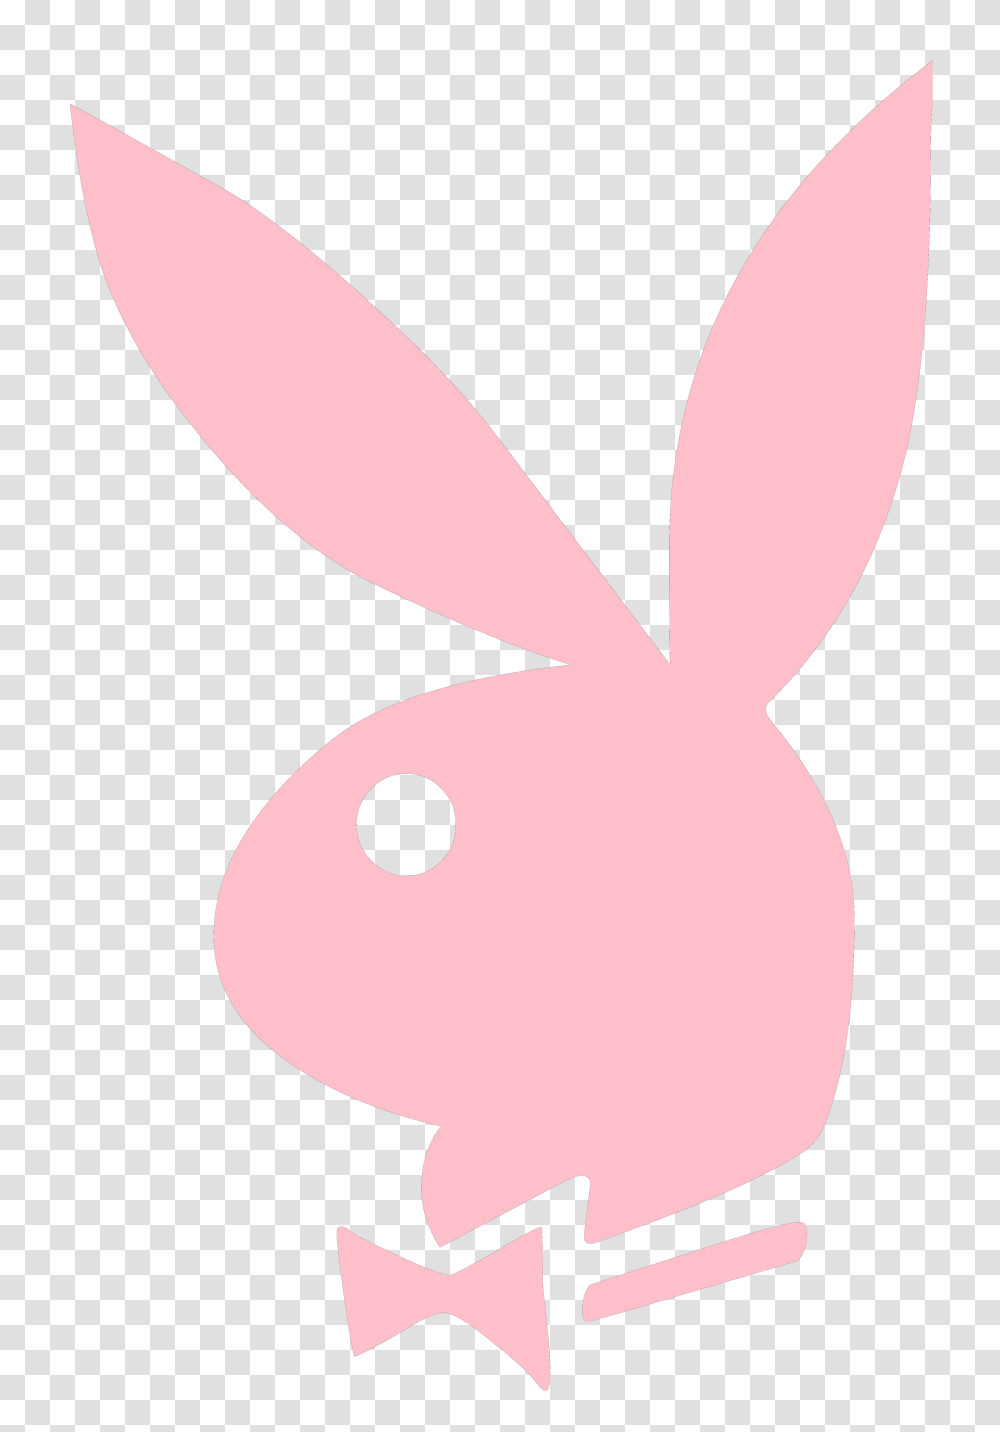 Playboy Logos Download, Egg, Food, Animal, Easter Egg Transparent Png